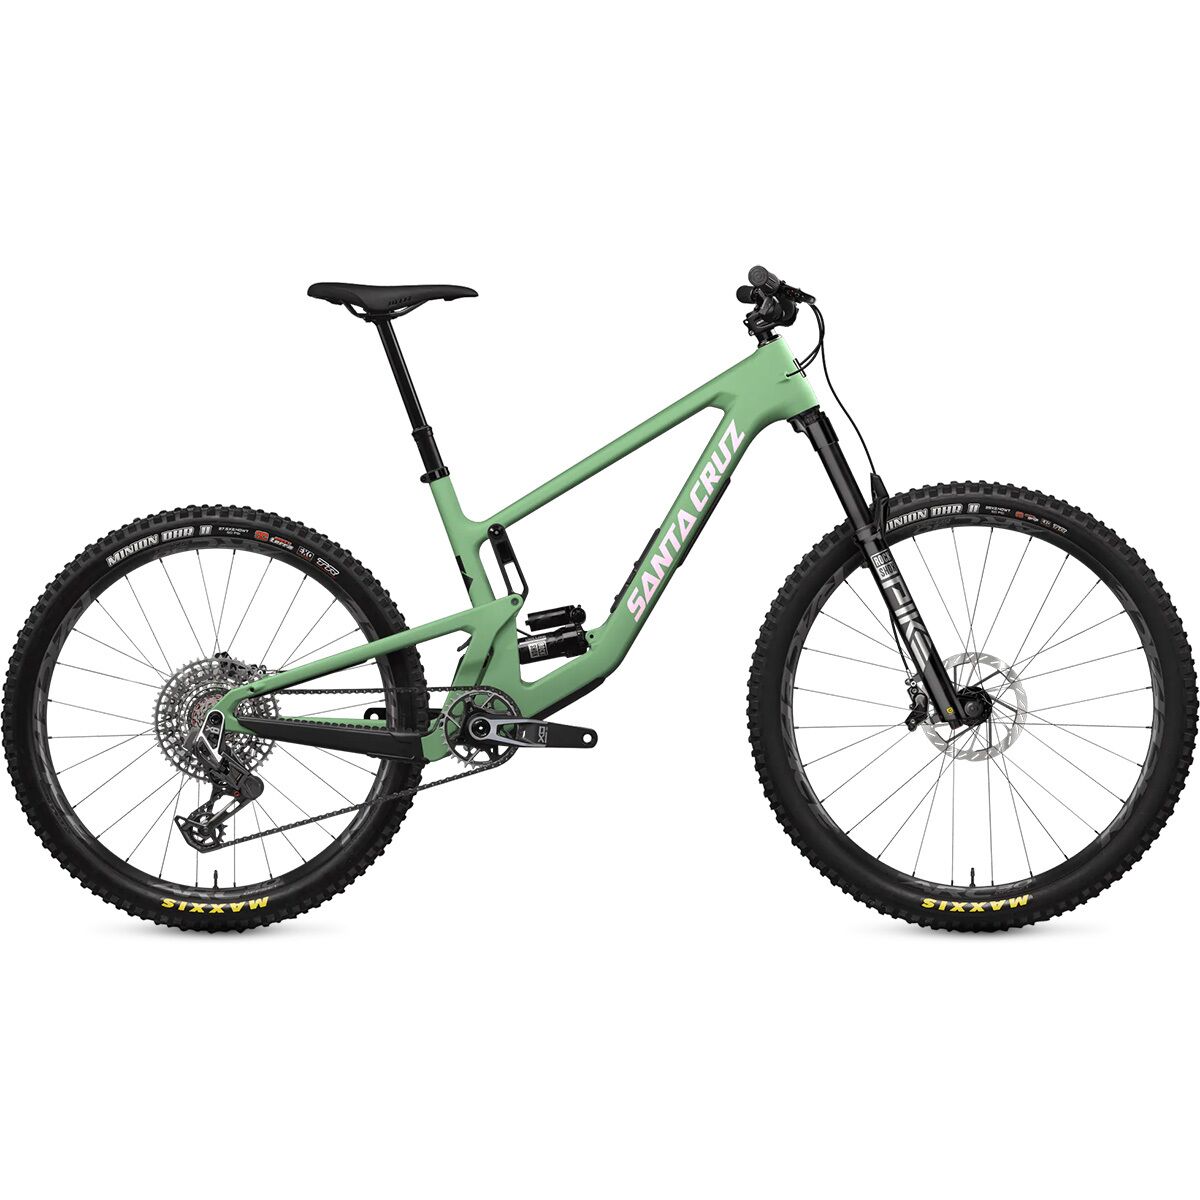 Santa Cruz Bicycles 5010 CC X0 Eagle Transmission Mountain Bike Matte Spumoni Green, S